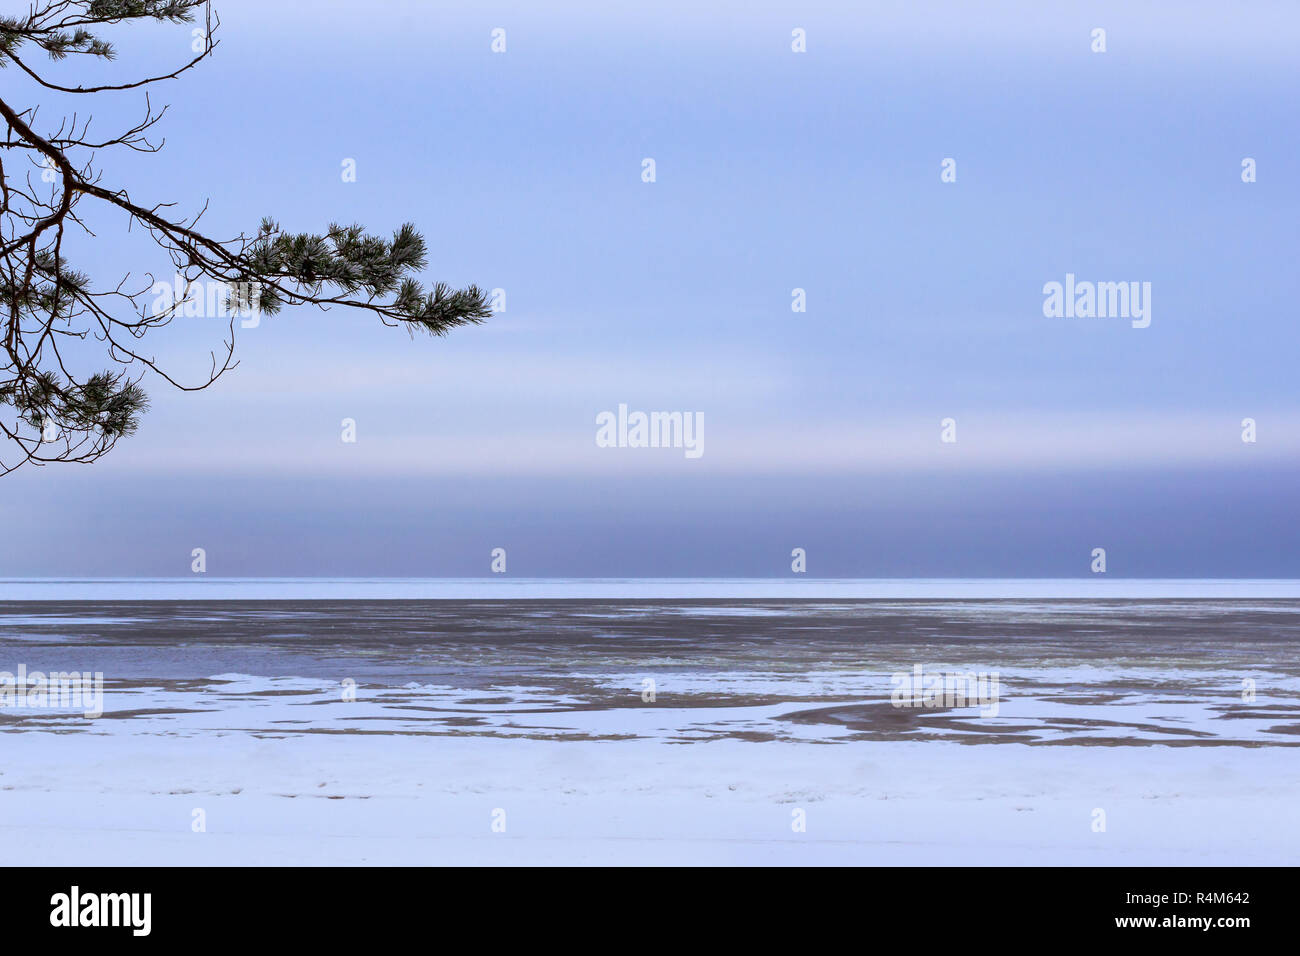 Journée d'hiver sur la rive enneigée de Narva Bay. Neige sur la glace du golfe de Finlande. Narva-Joesuu resort ville au Nord Est de l'Estonie Ida-Virumaa County. Le Nord de l'hiver sévère et temps de neige Banque D'Images